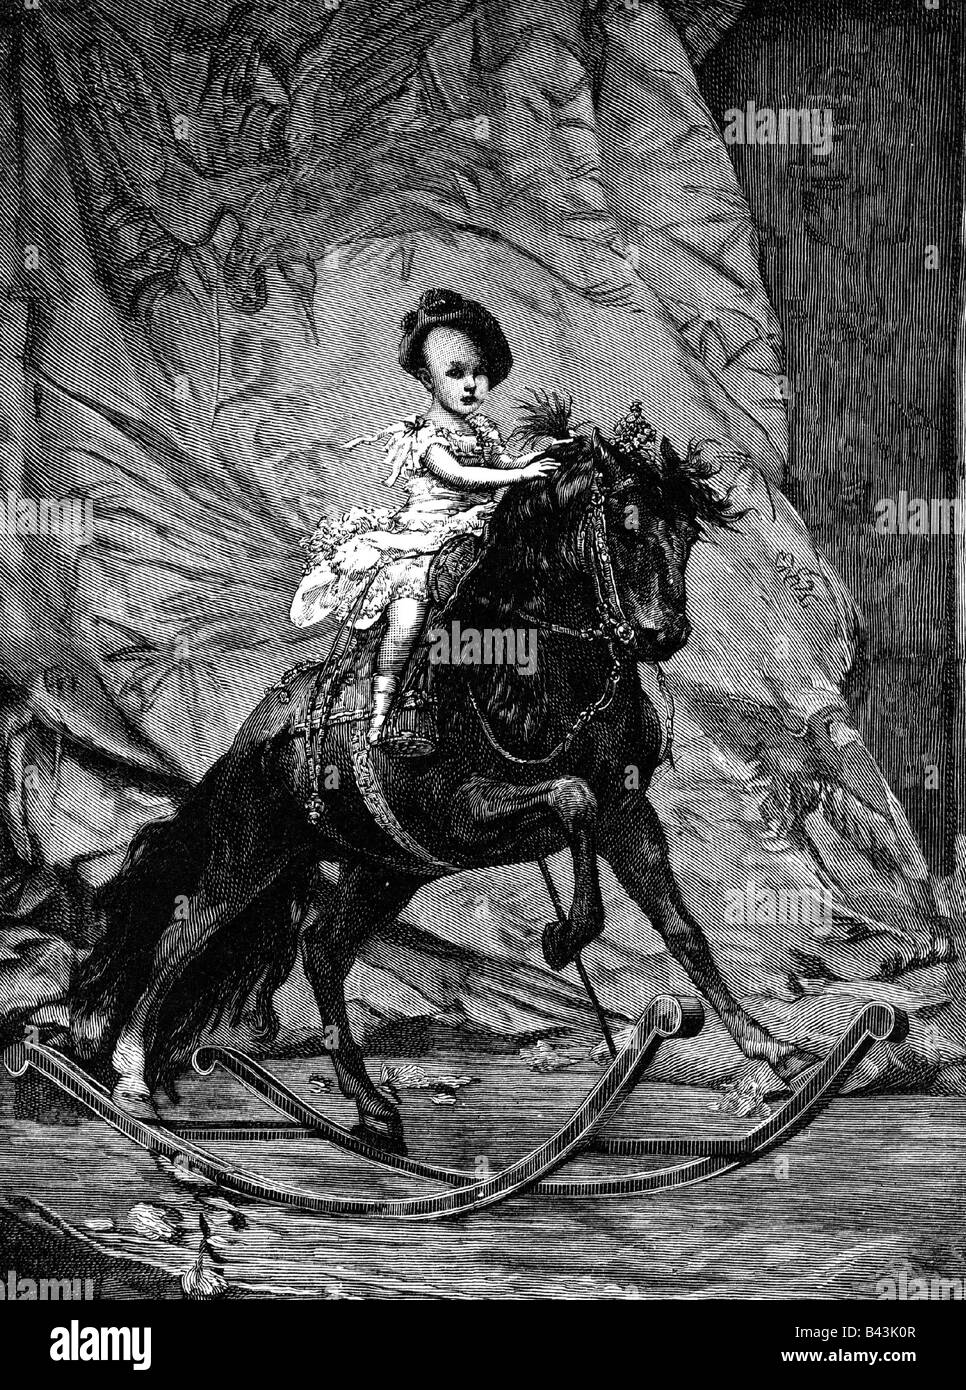 Alfonso XIII, 17.5.1886 - 28.2. 1941, roi d'Espagne, 17.5.1886 - 14.4.1931, pleine longueur, gravure sur bois après peinture par le professeur J. Koppay, vers 1895, l'artiste n'a pas d'auteur pour être effacé Banque D'Images